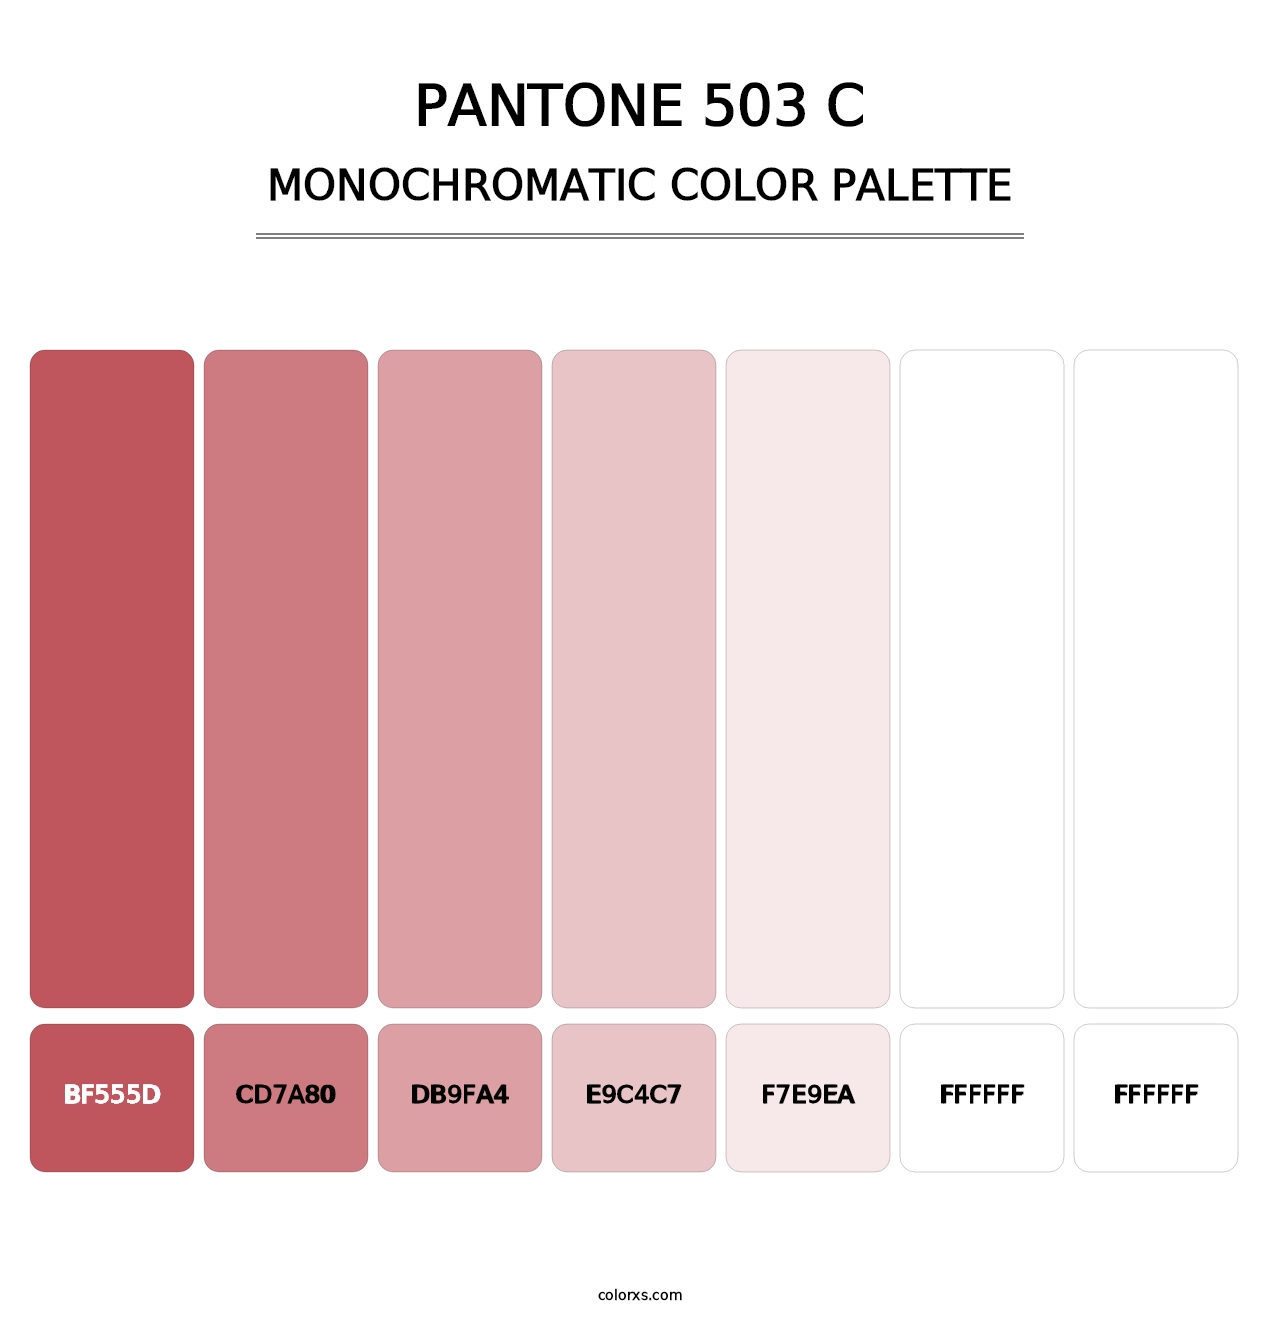 PANTONE 503 C - Monochromatic Color Palette